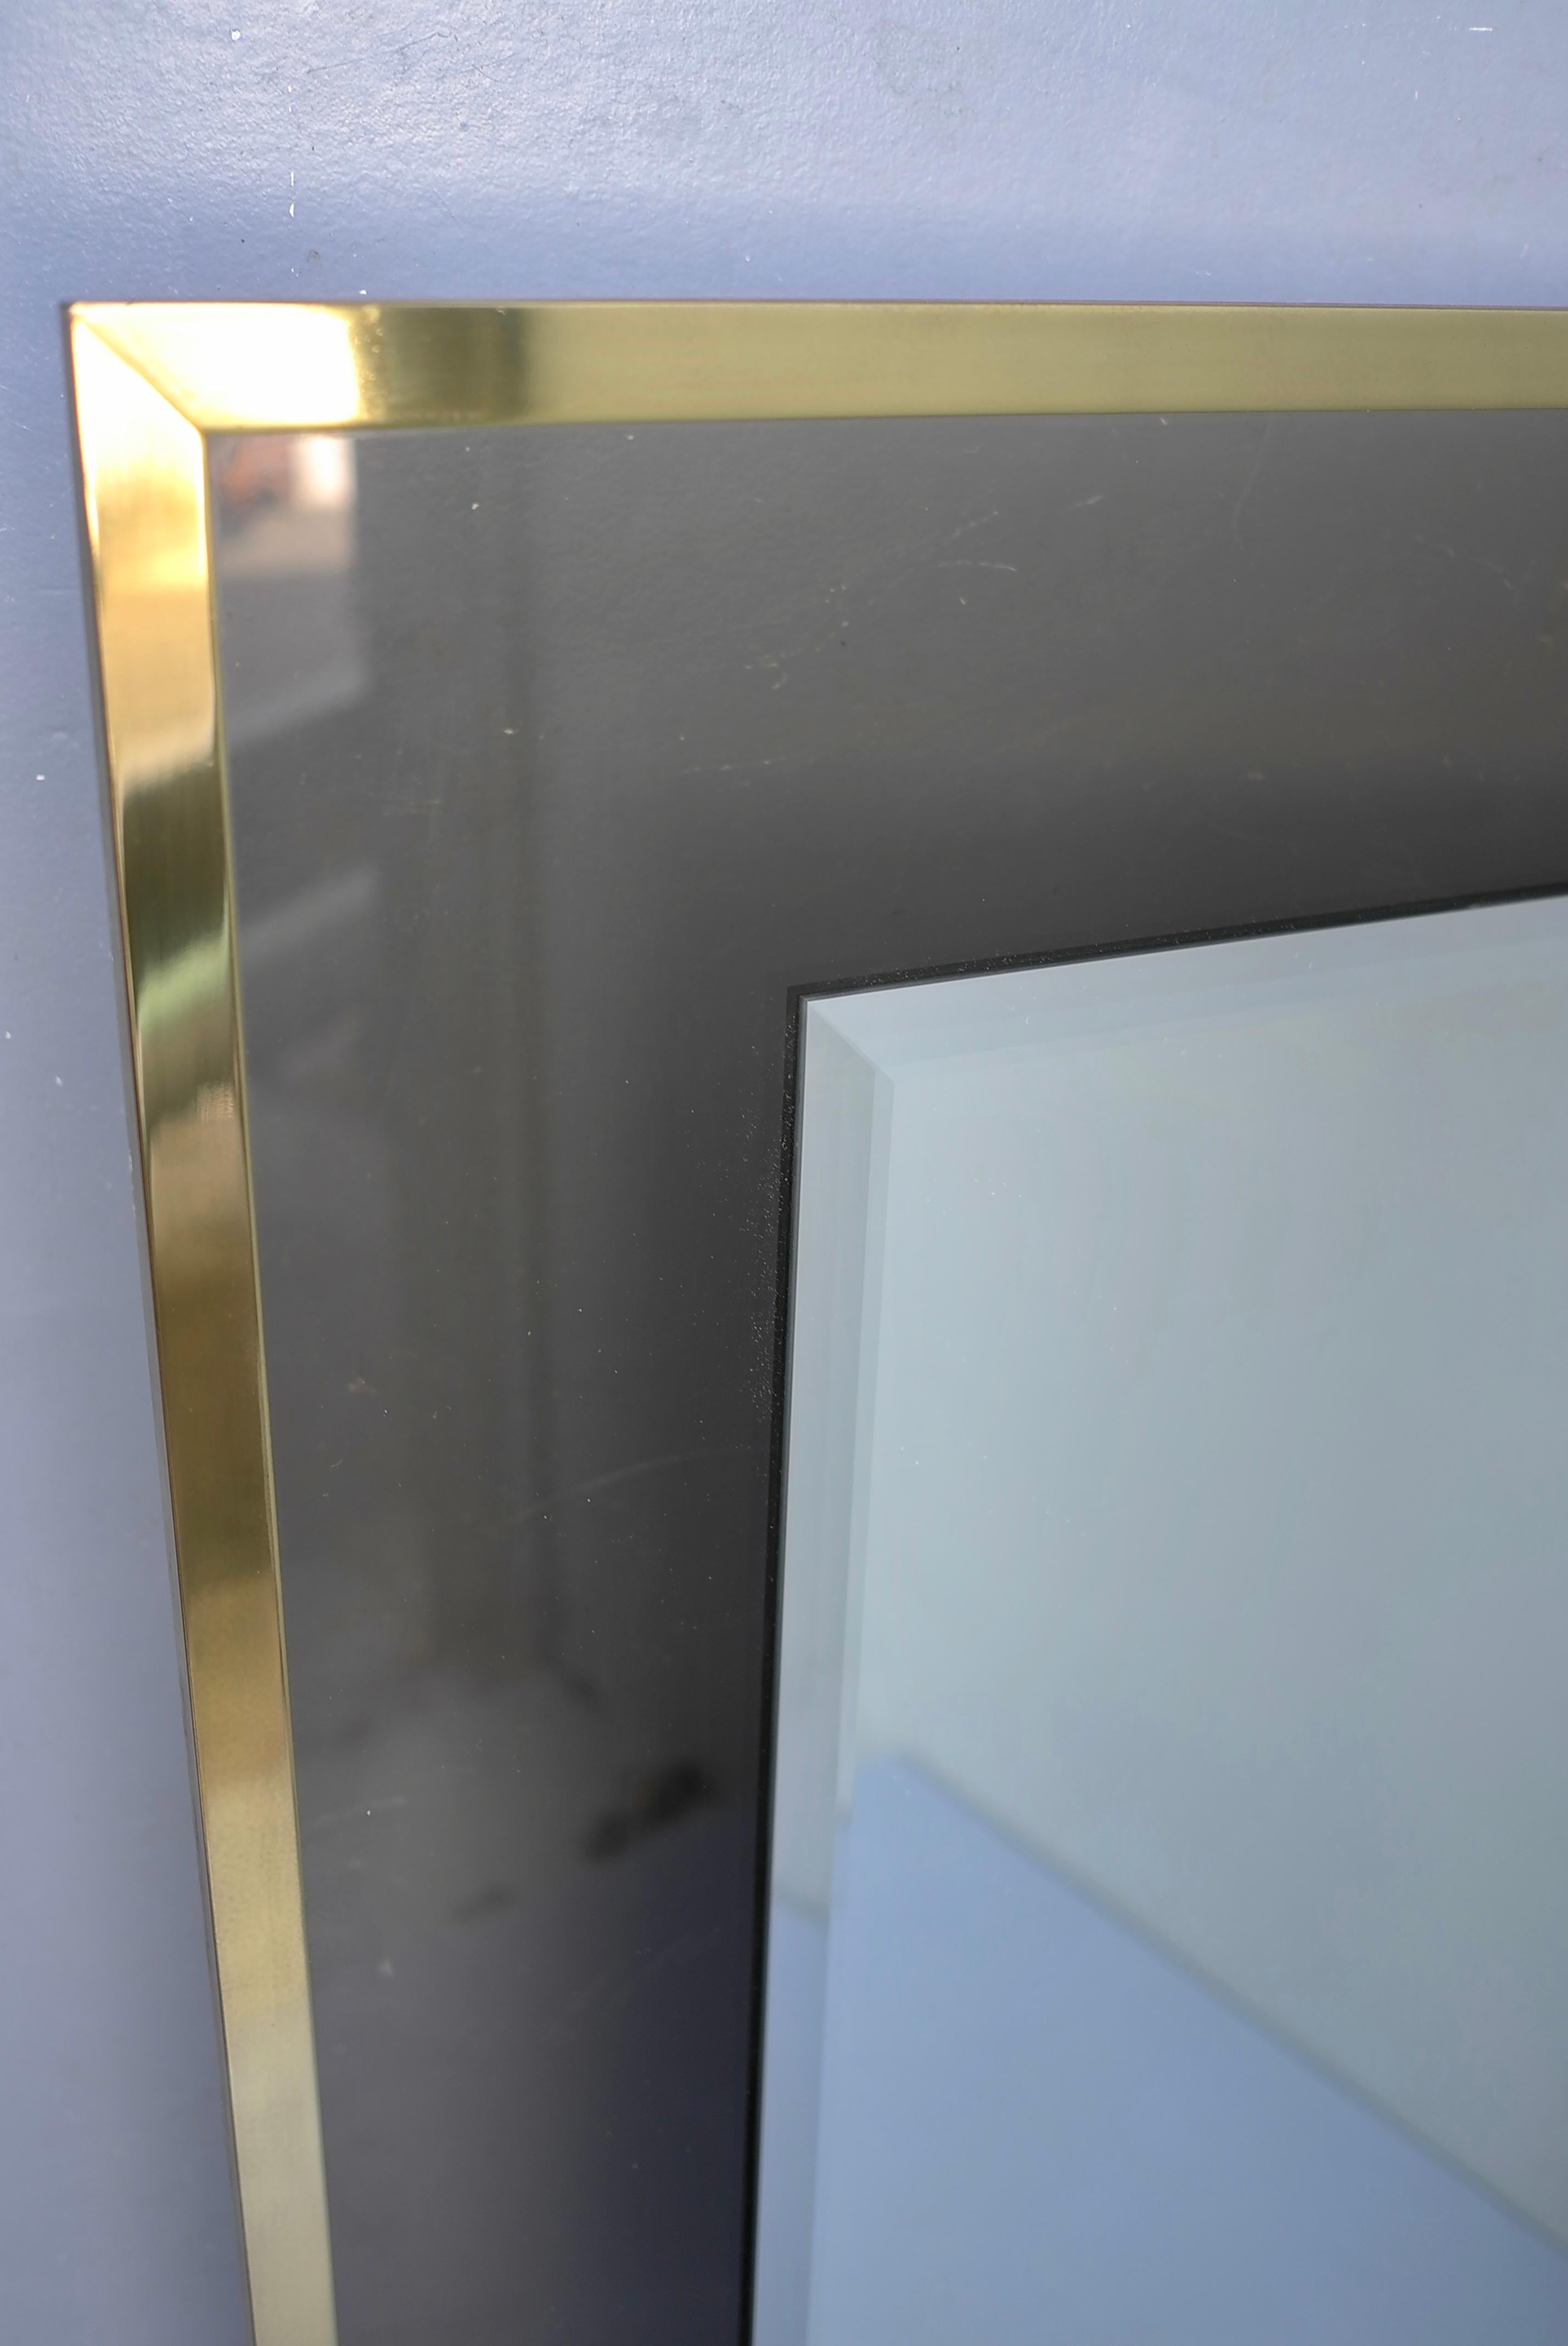 Großer Spiegel mit Messingrahmen und Rauchglas, Belgien 1970er Jahre

Der Spiegel kann auch horizontal aufgehängt werden.